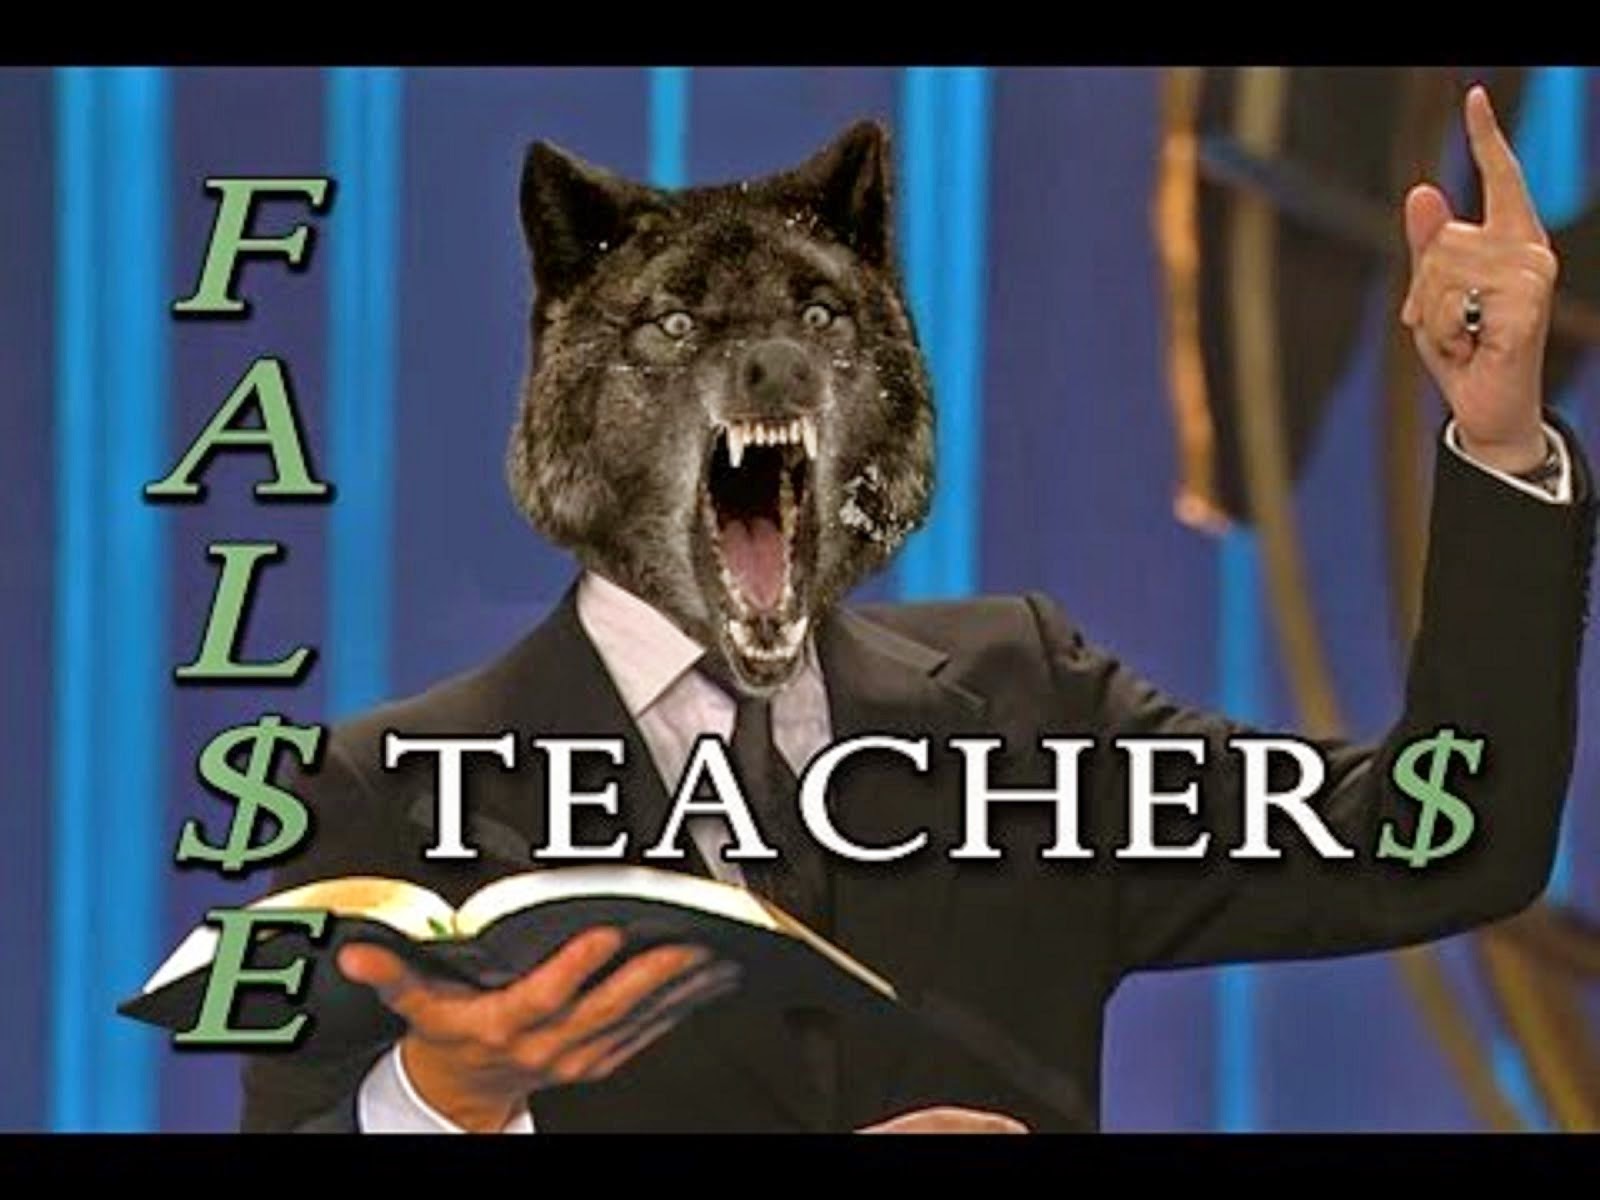 BEWARE OF FALSE TEACHERS